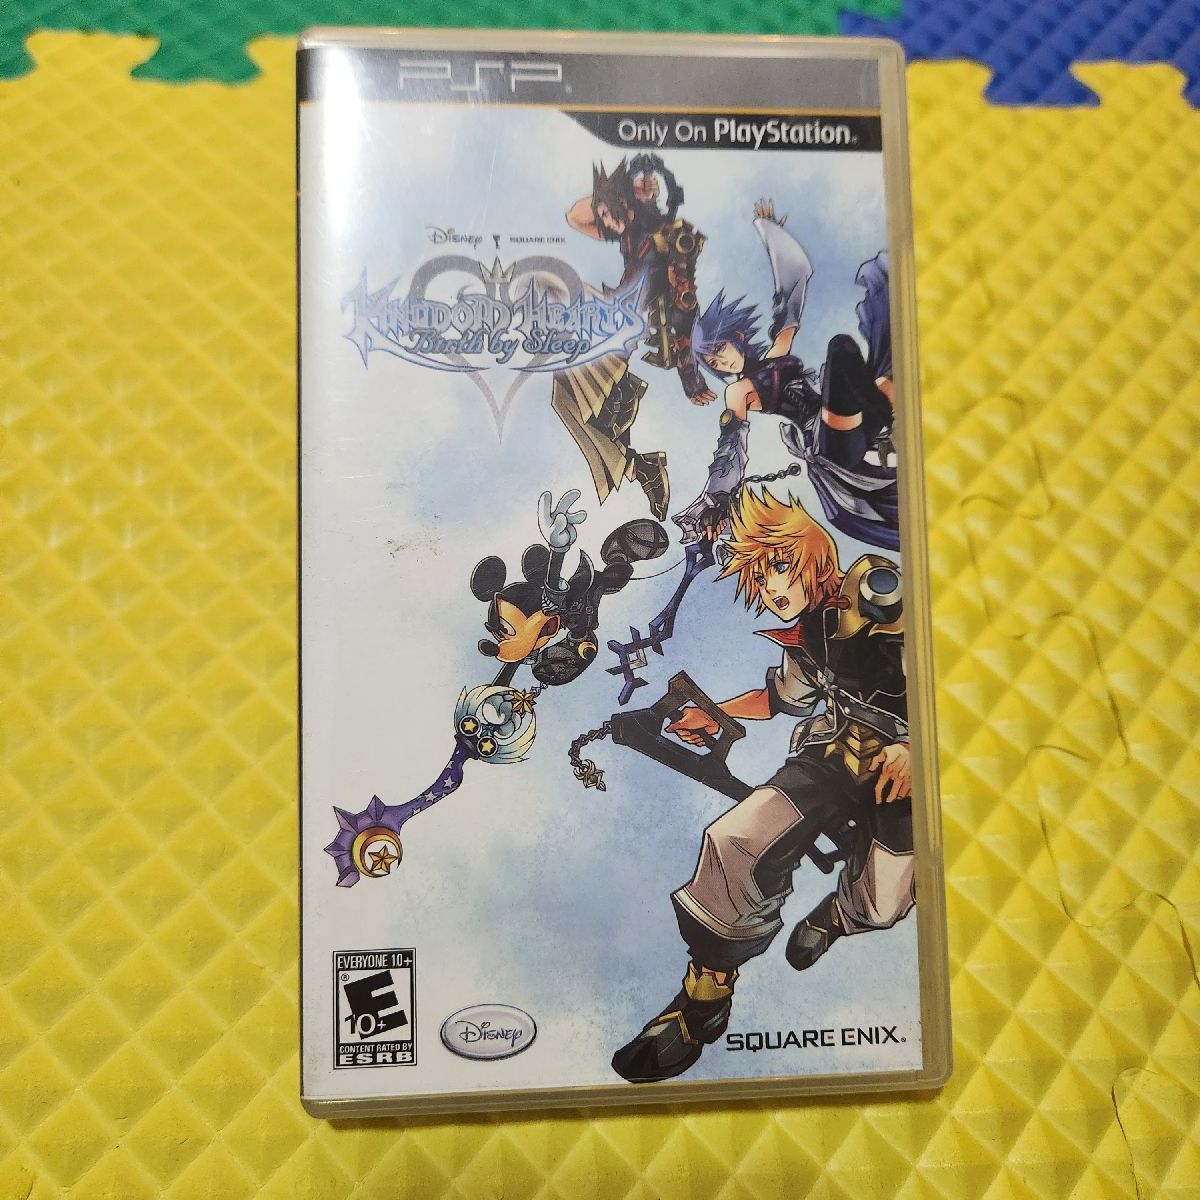 Preços baixos em Kingdom Hearts jogos de vídeo Sony PSP